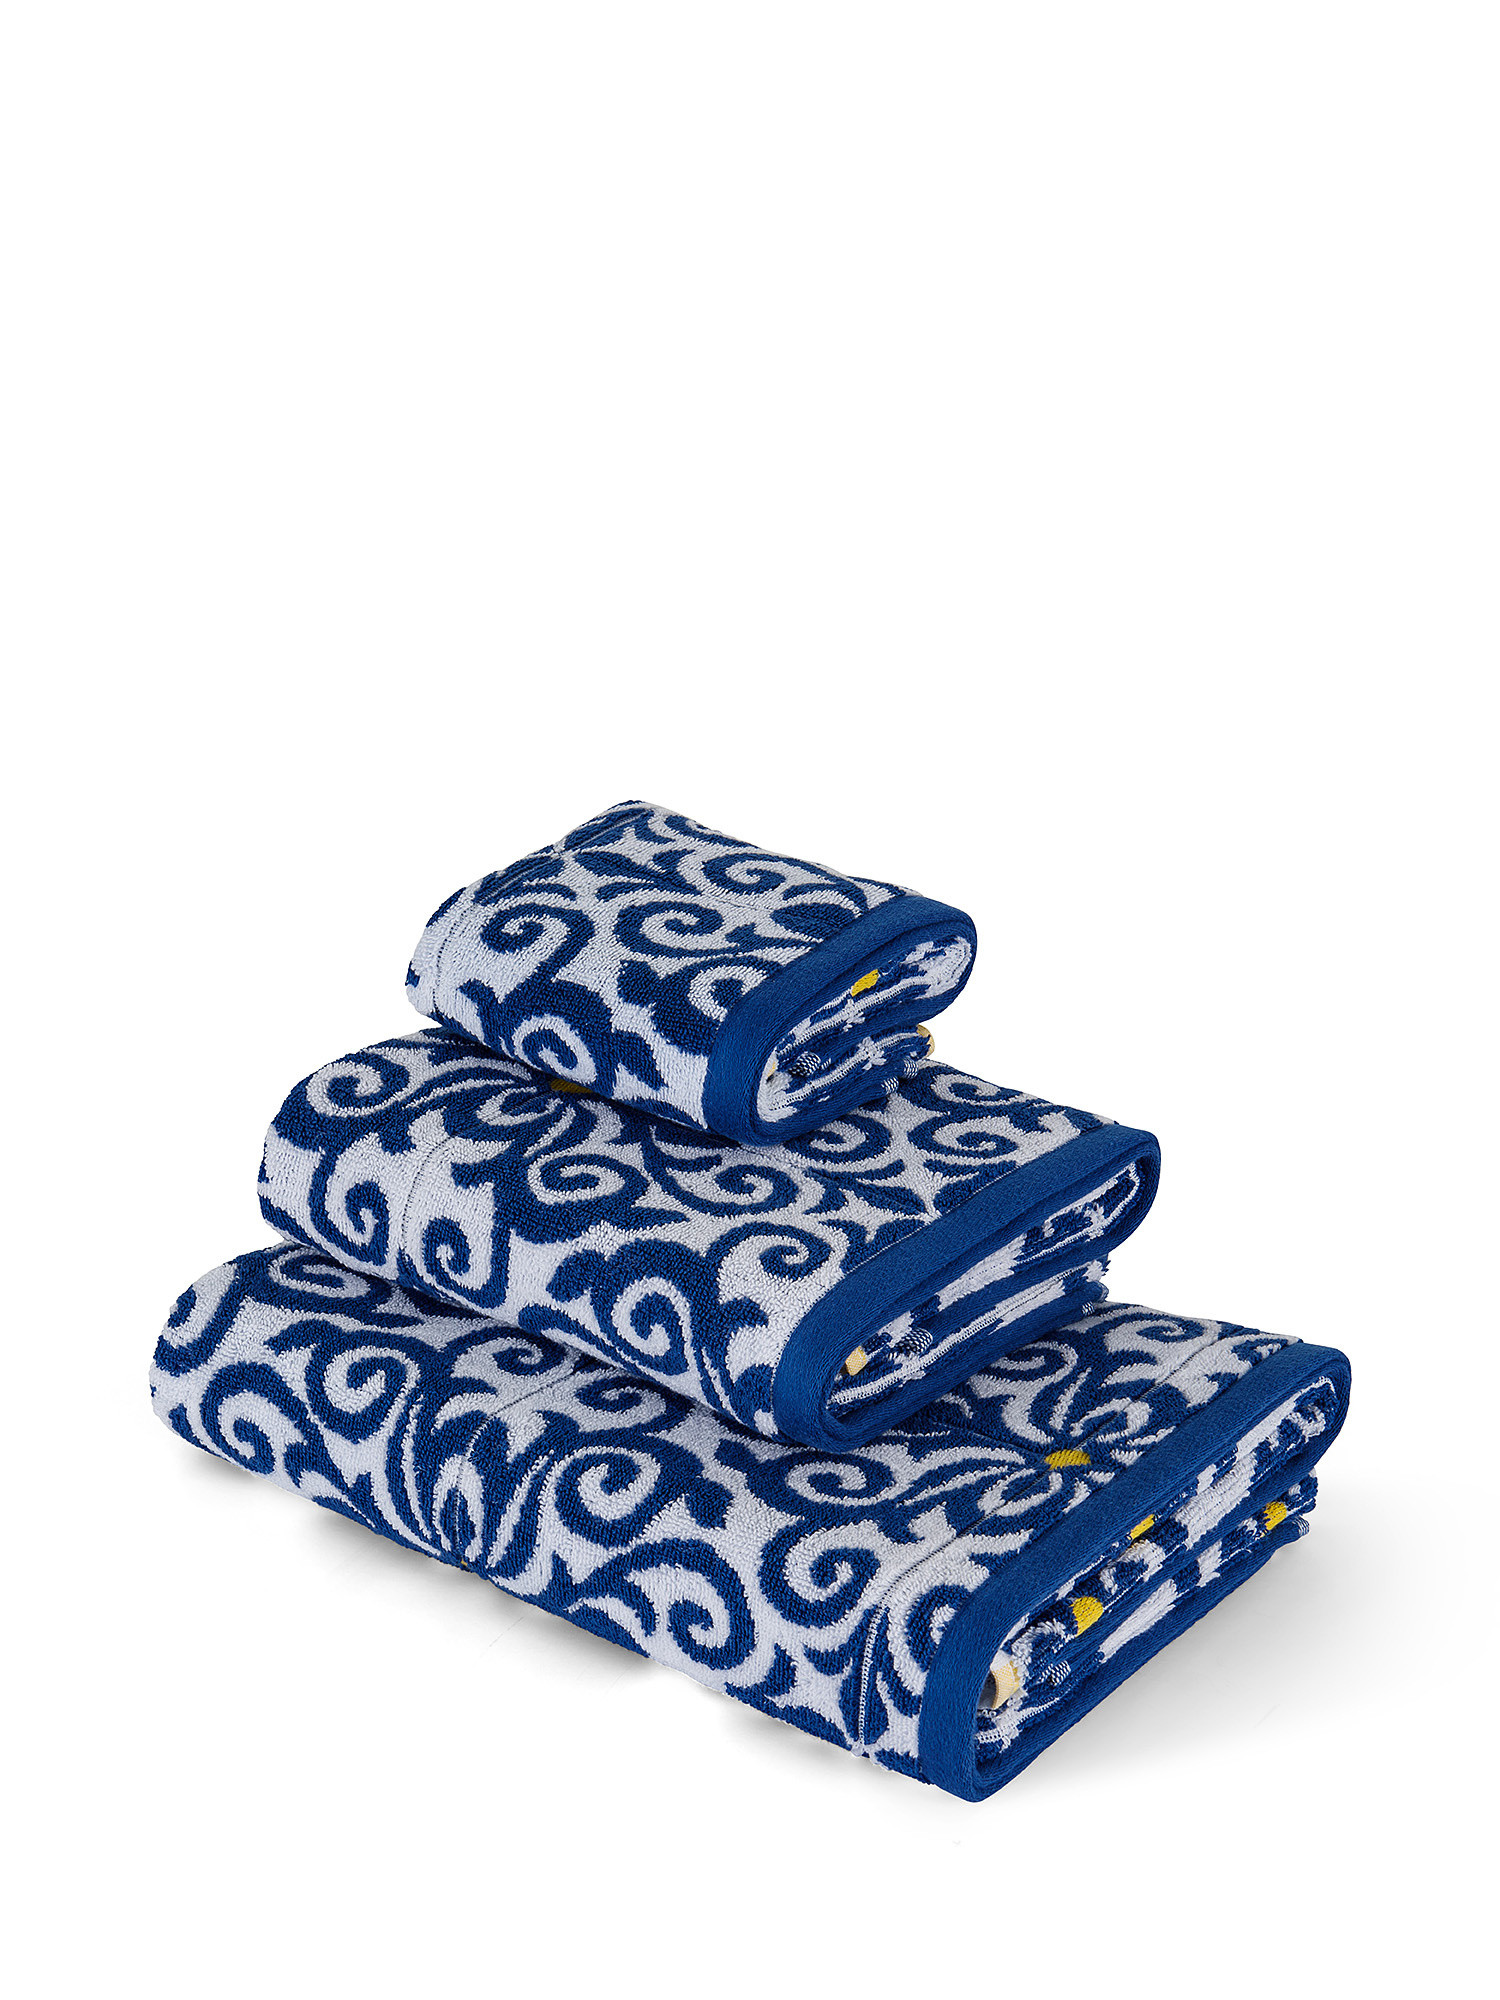 Asciugamano cotone tinto filo motivo maioliche, Blu, large image number 0